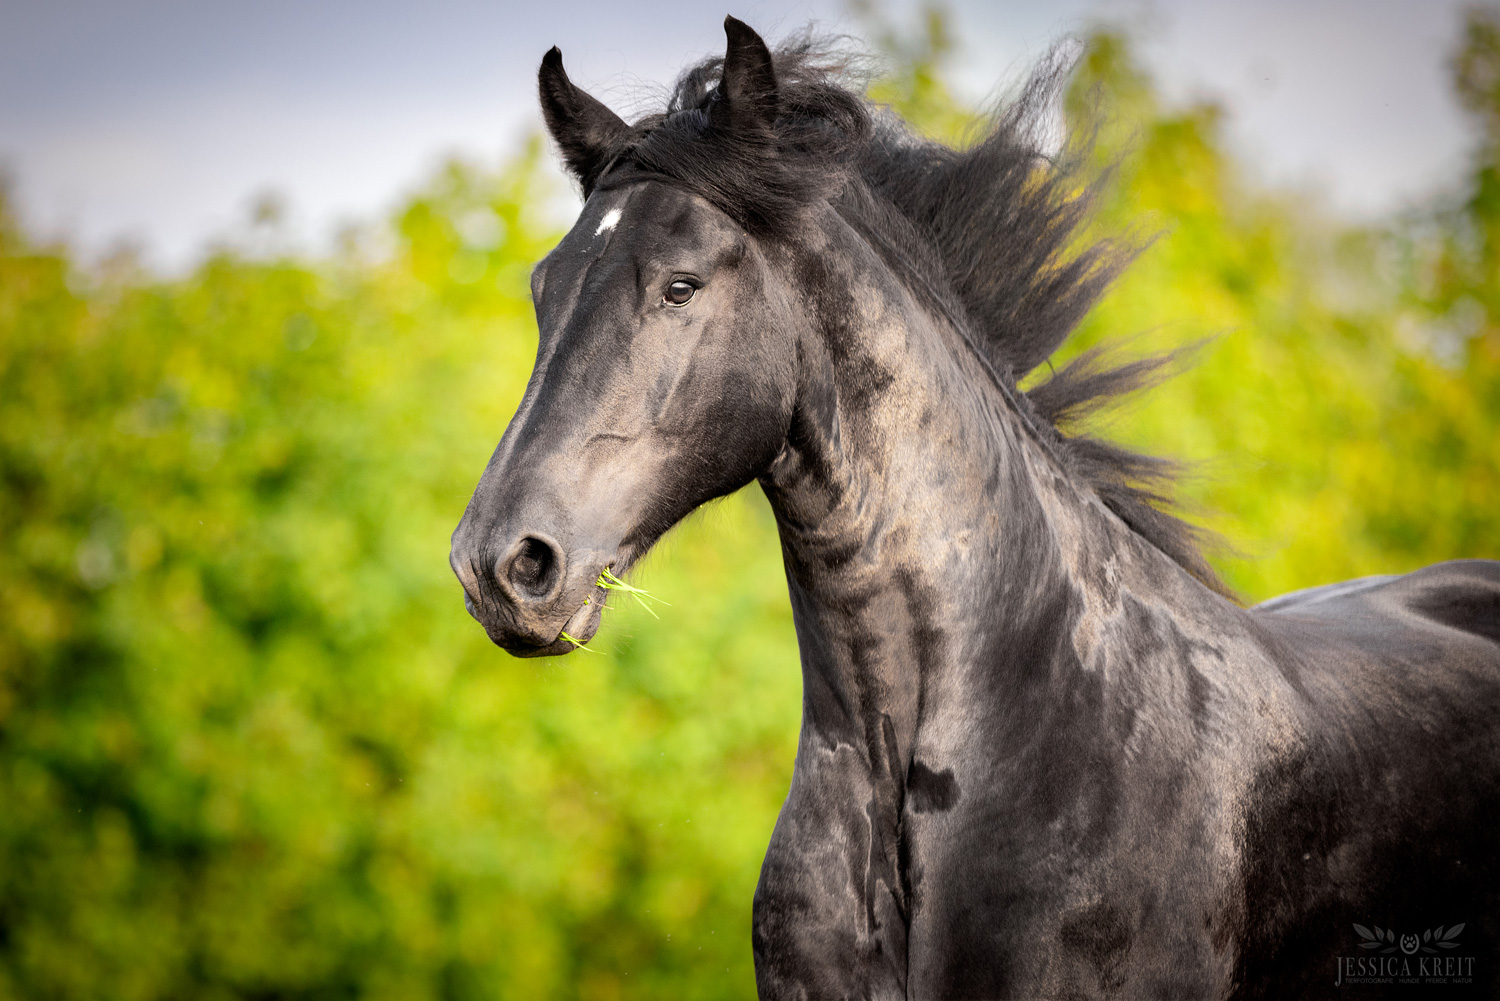 Pferdefotografie von Tierfotografie Jessica Kreit aus Hannover. Porträt von einem Pferd im Freilauf